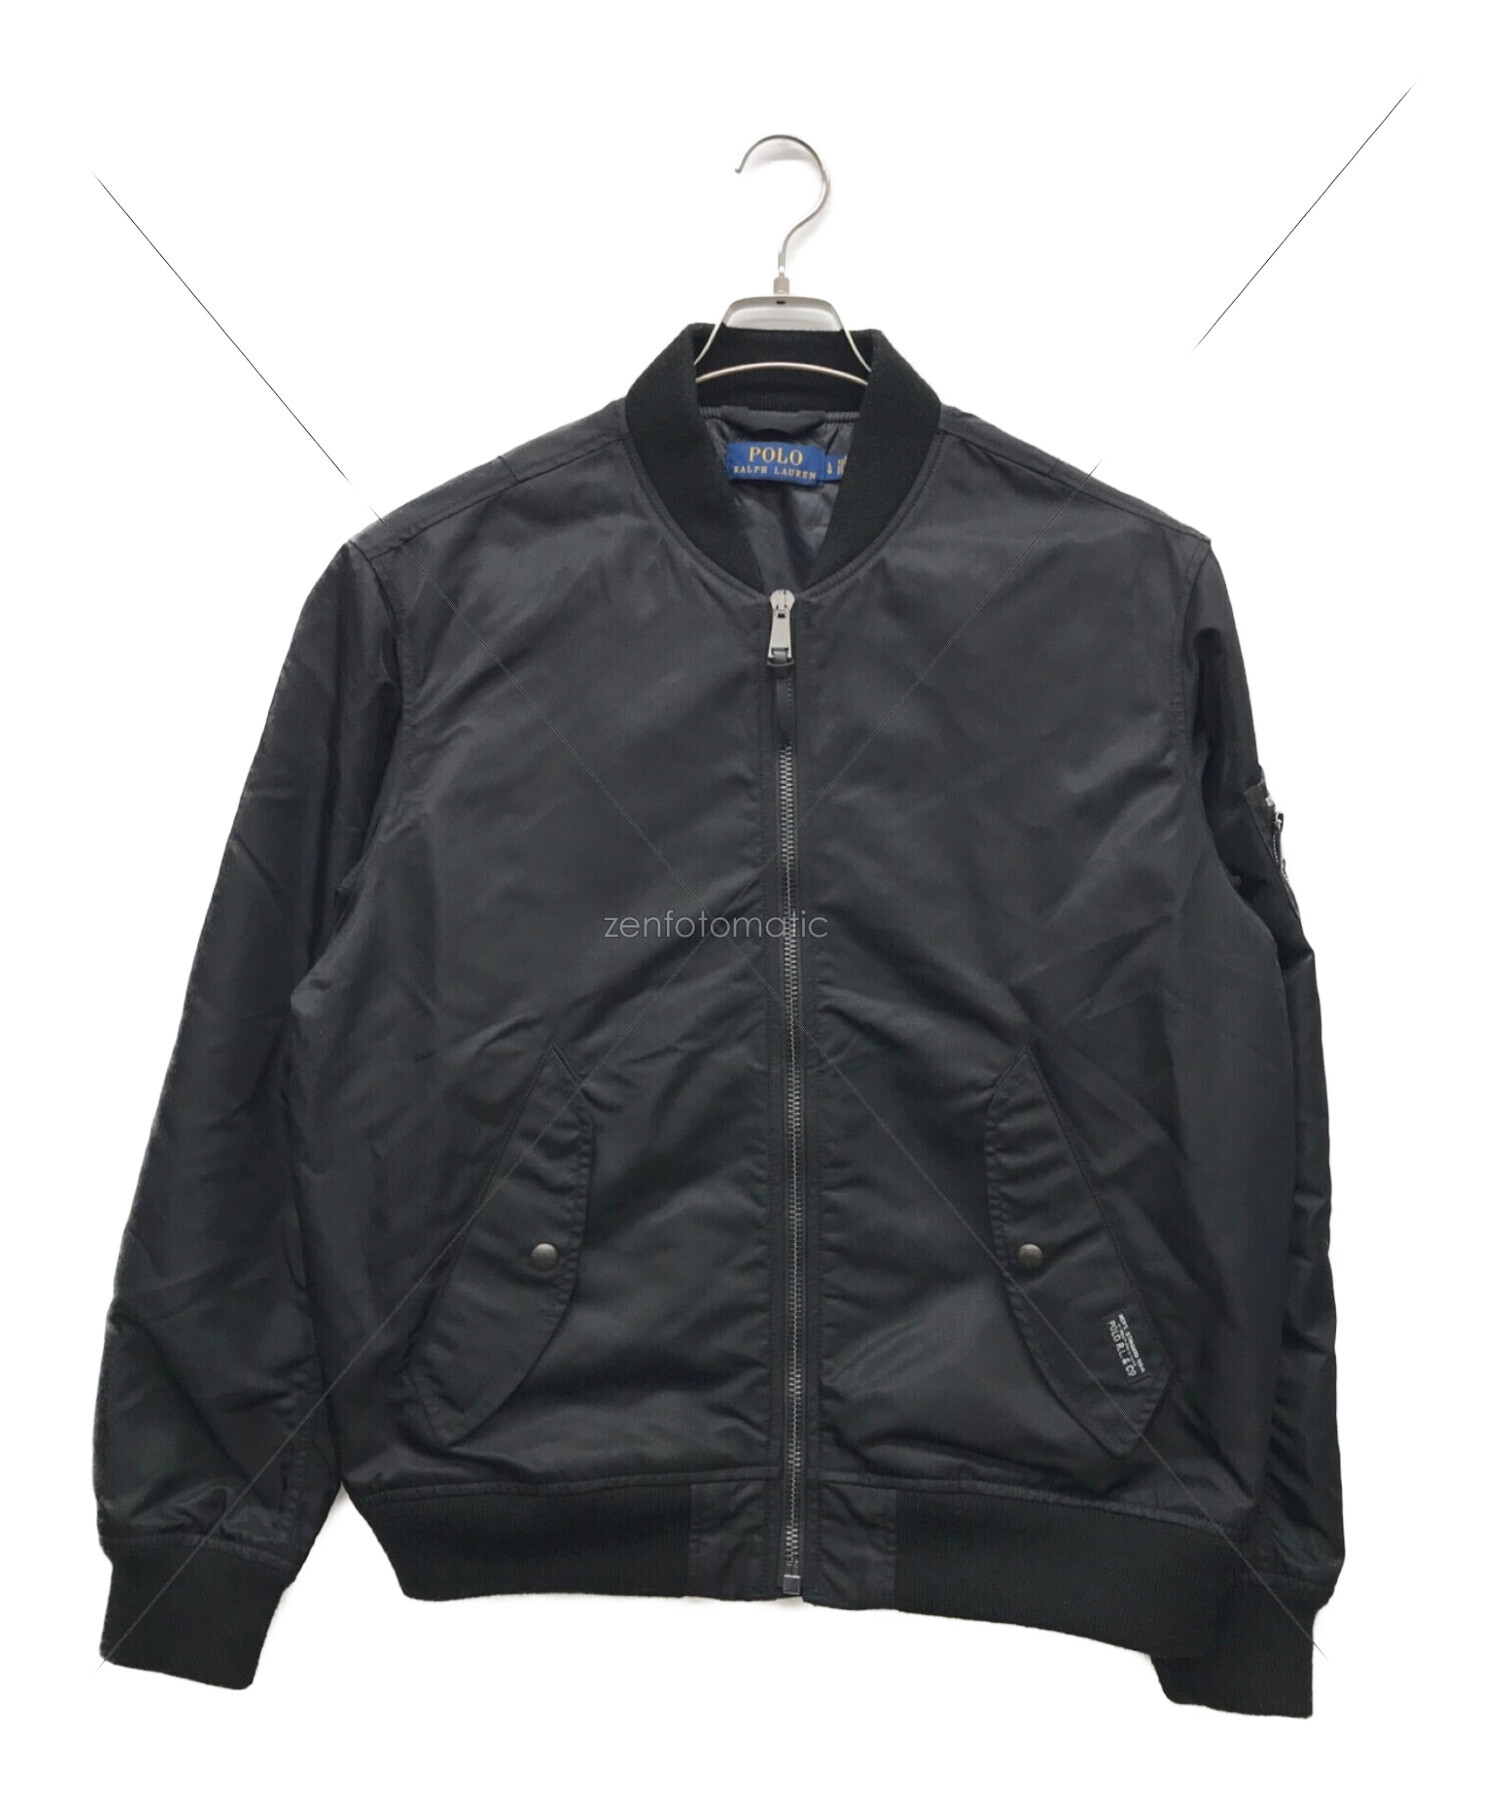 POLO RALPH LAUREN (ポロ・ラルフローレン) MA-1ジャケット ブラック サイズ:L